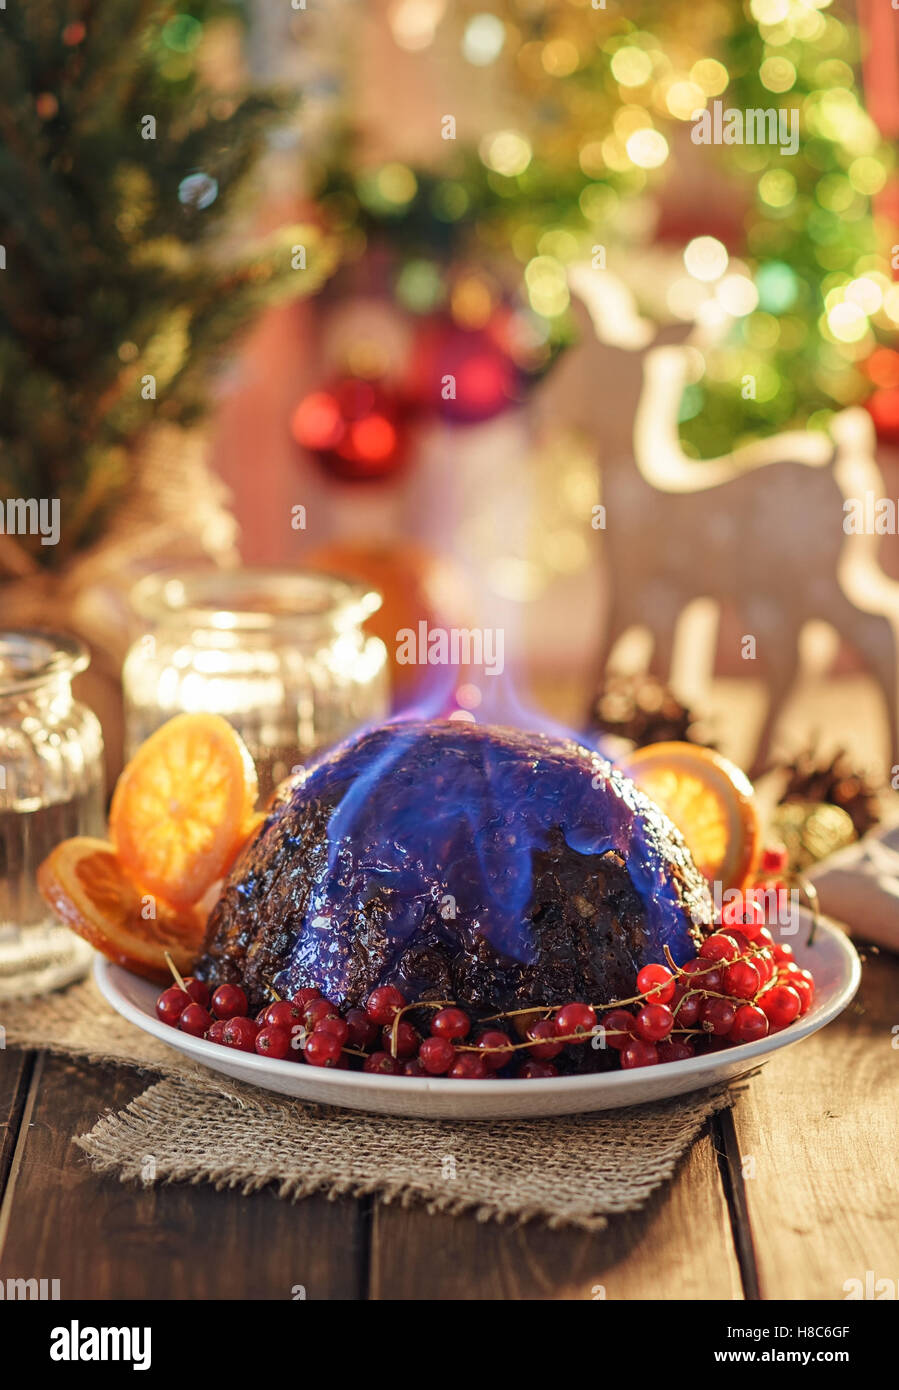 Christmas pudding flambe Stock Photo